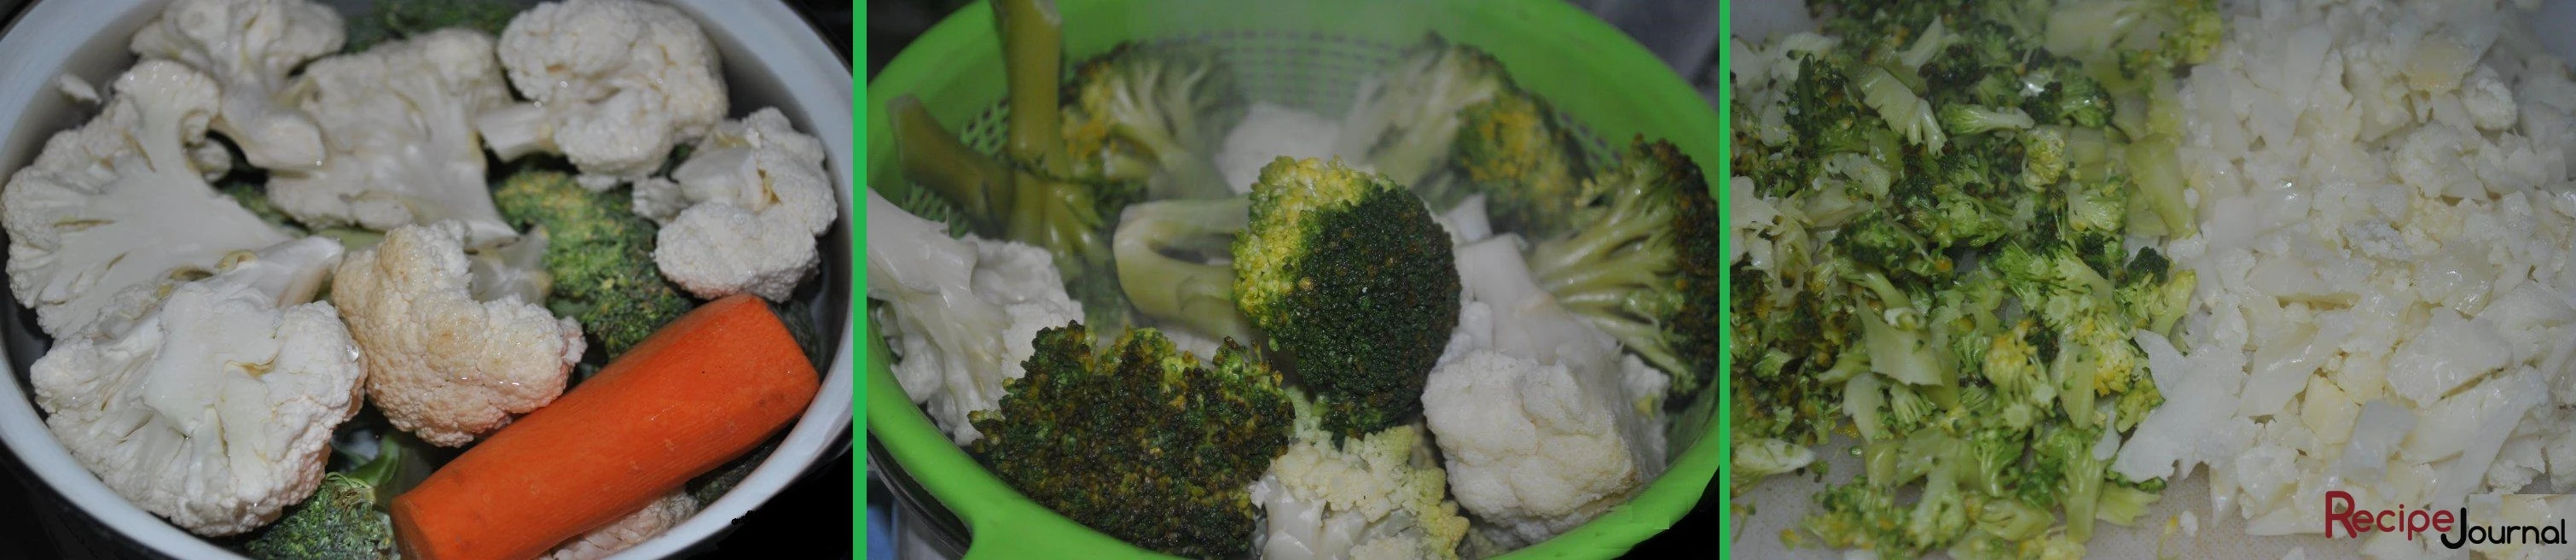 Почистить овощи, капусту и брокколи разобрать на соцветия. Соцветия отварить до полуготовности. Затем откинуть на дуршлаг и после того как вода стечет, порезать помельче.